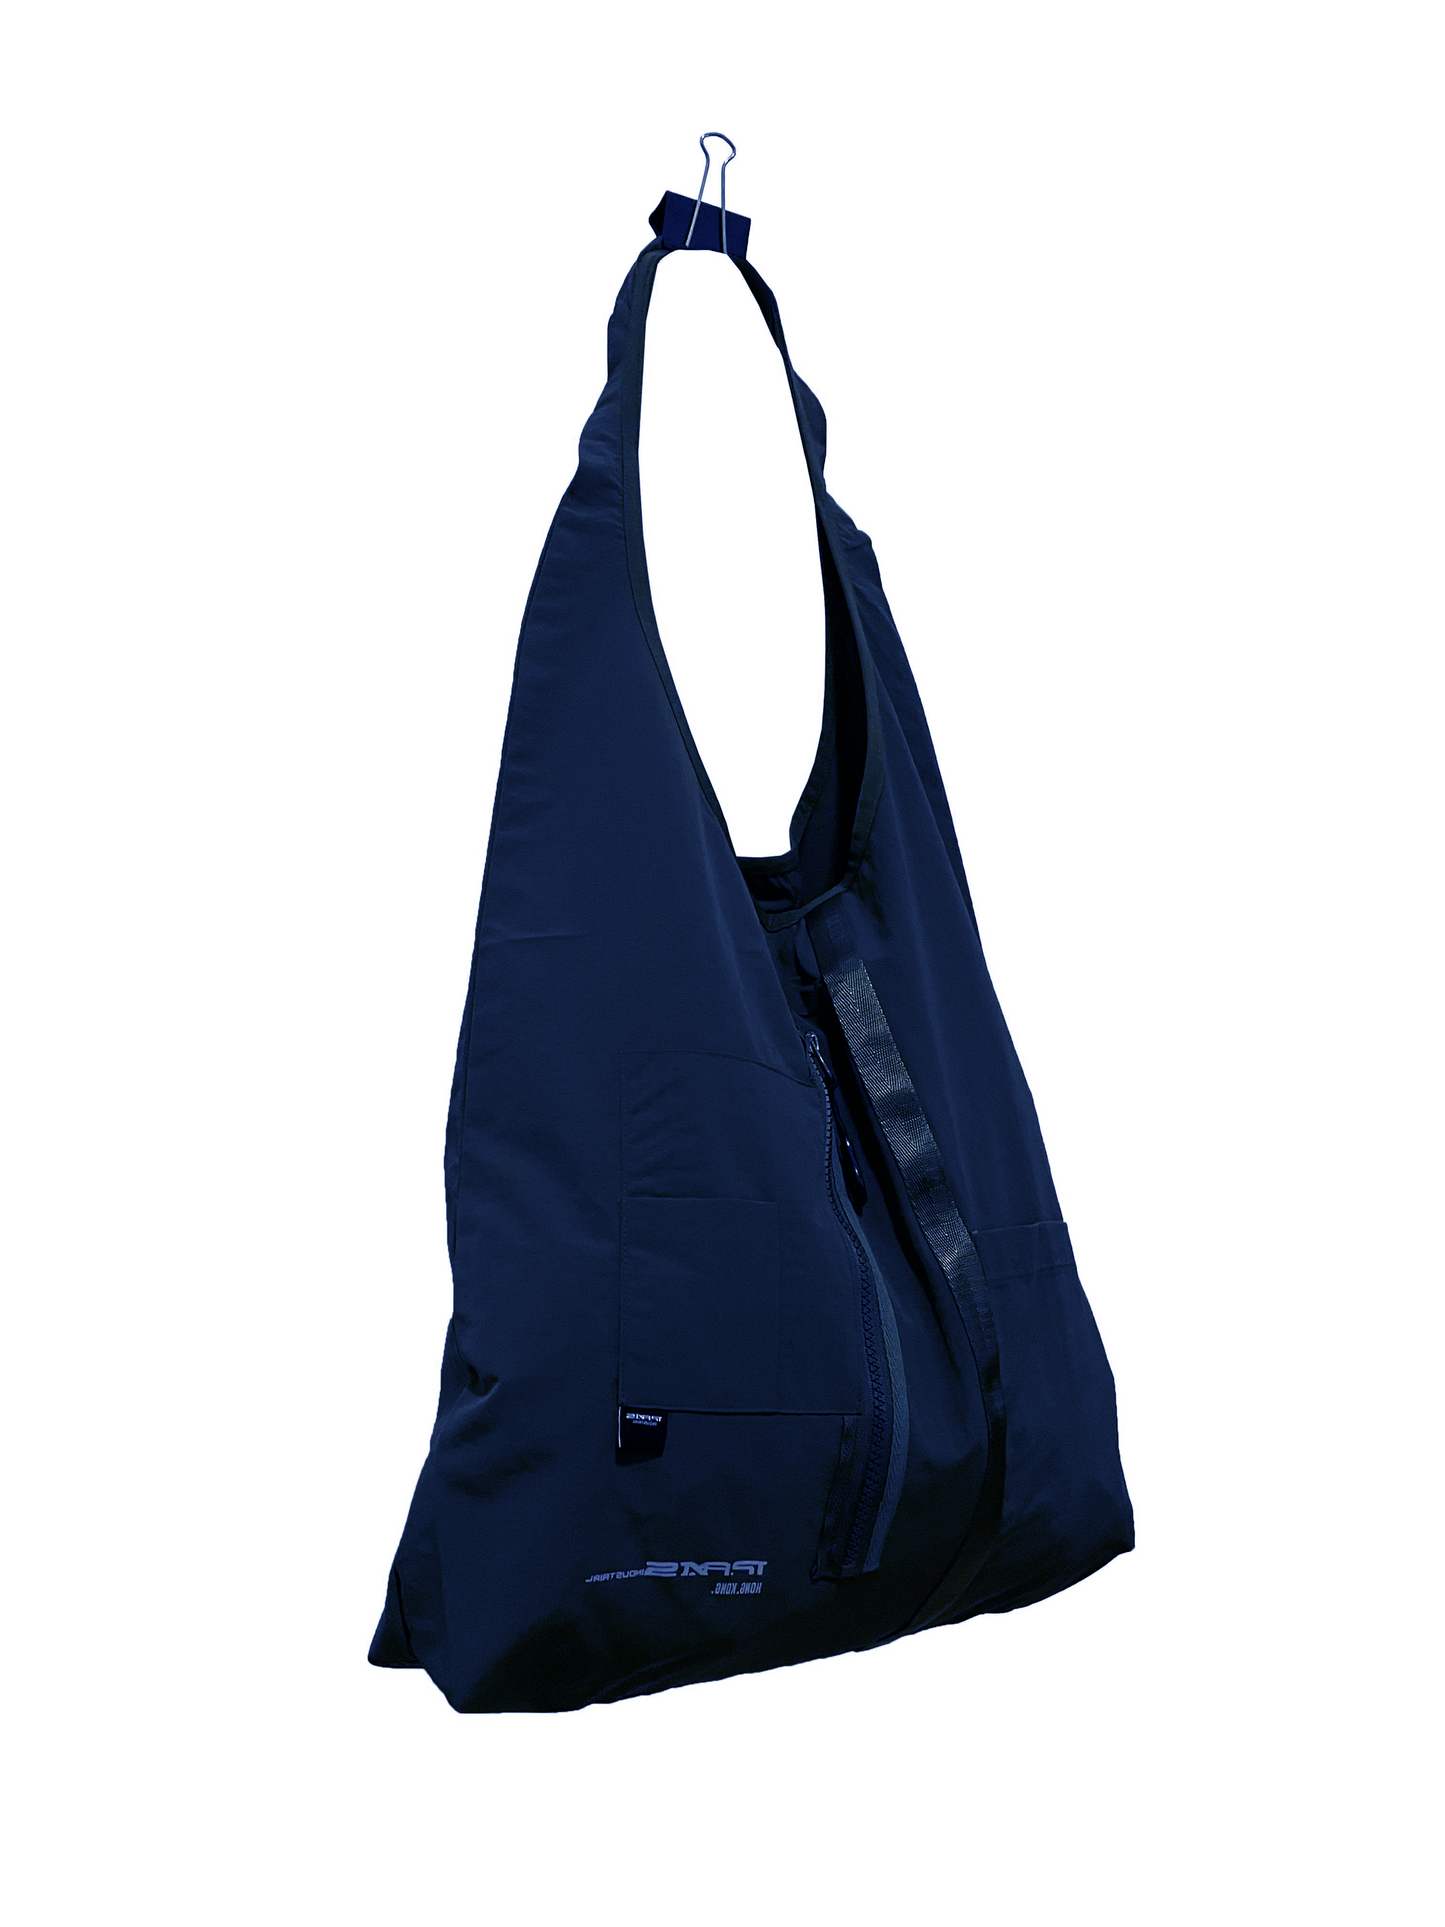 寶藍色機能肩袋 Functional Tote bag